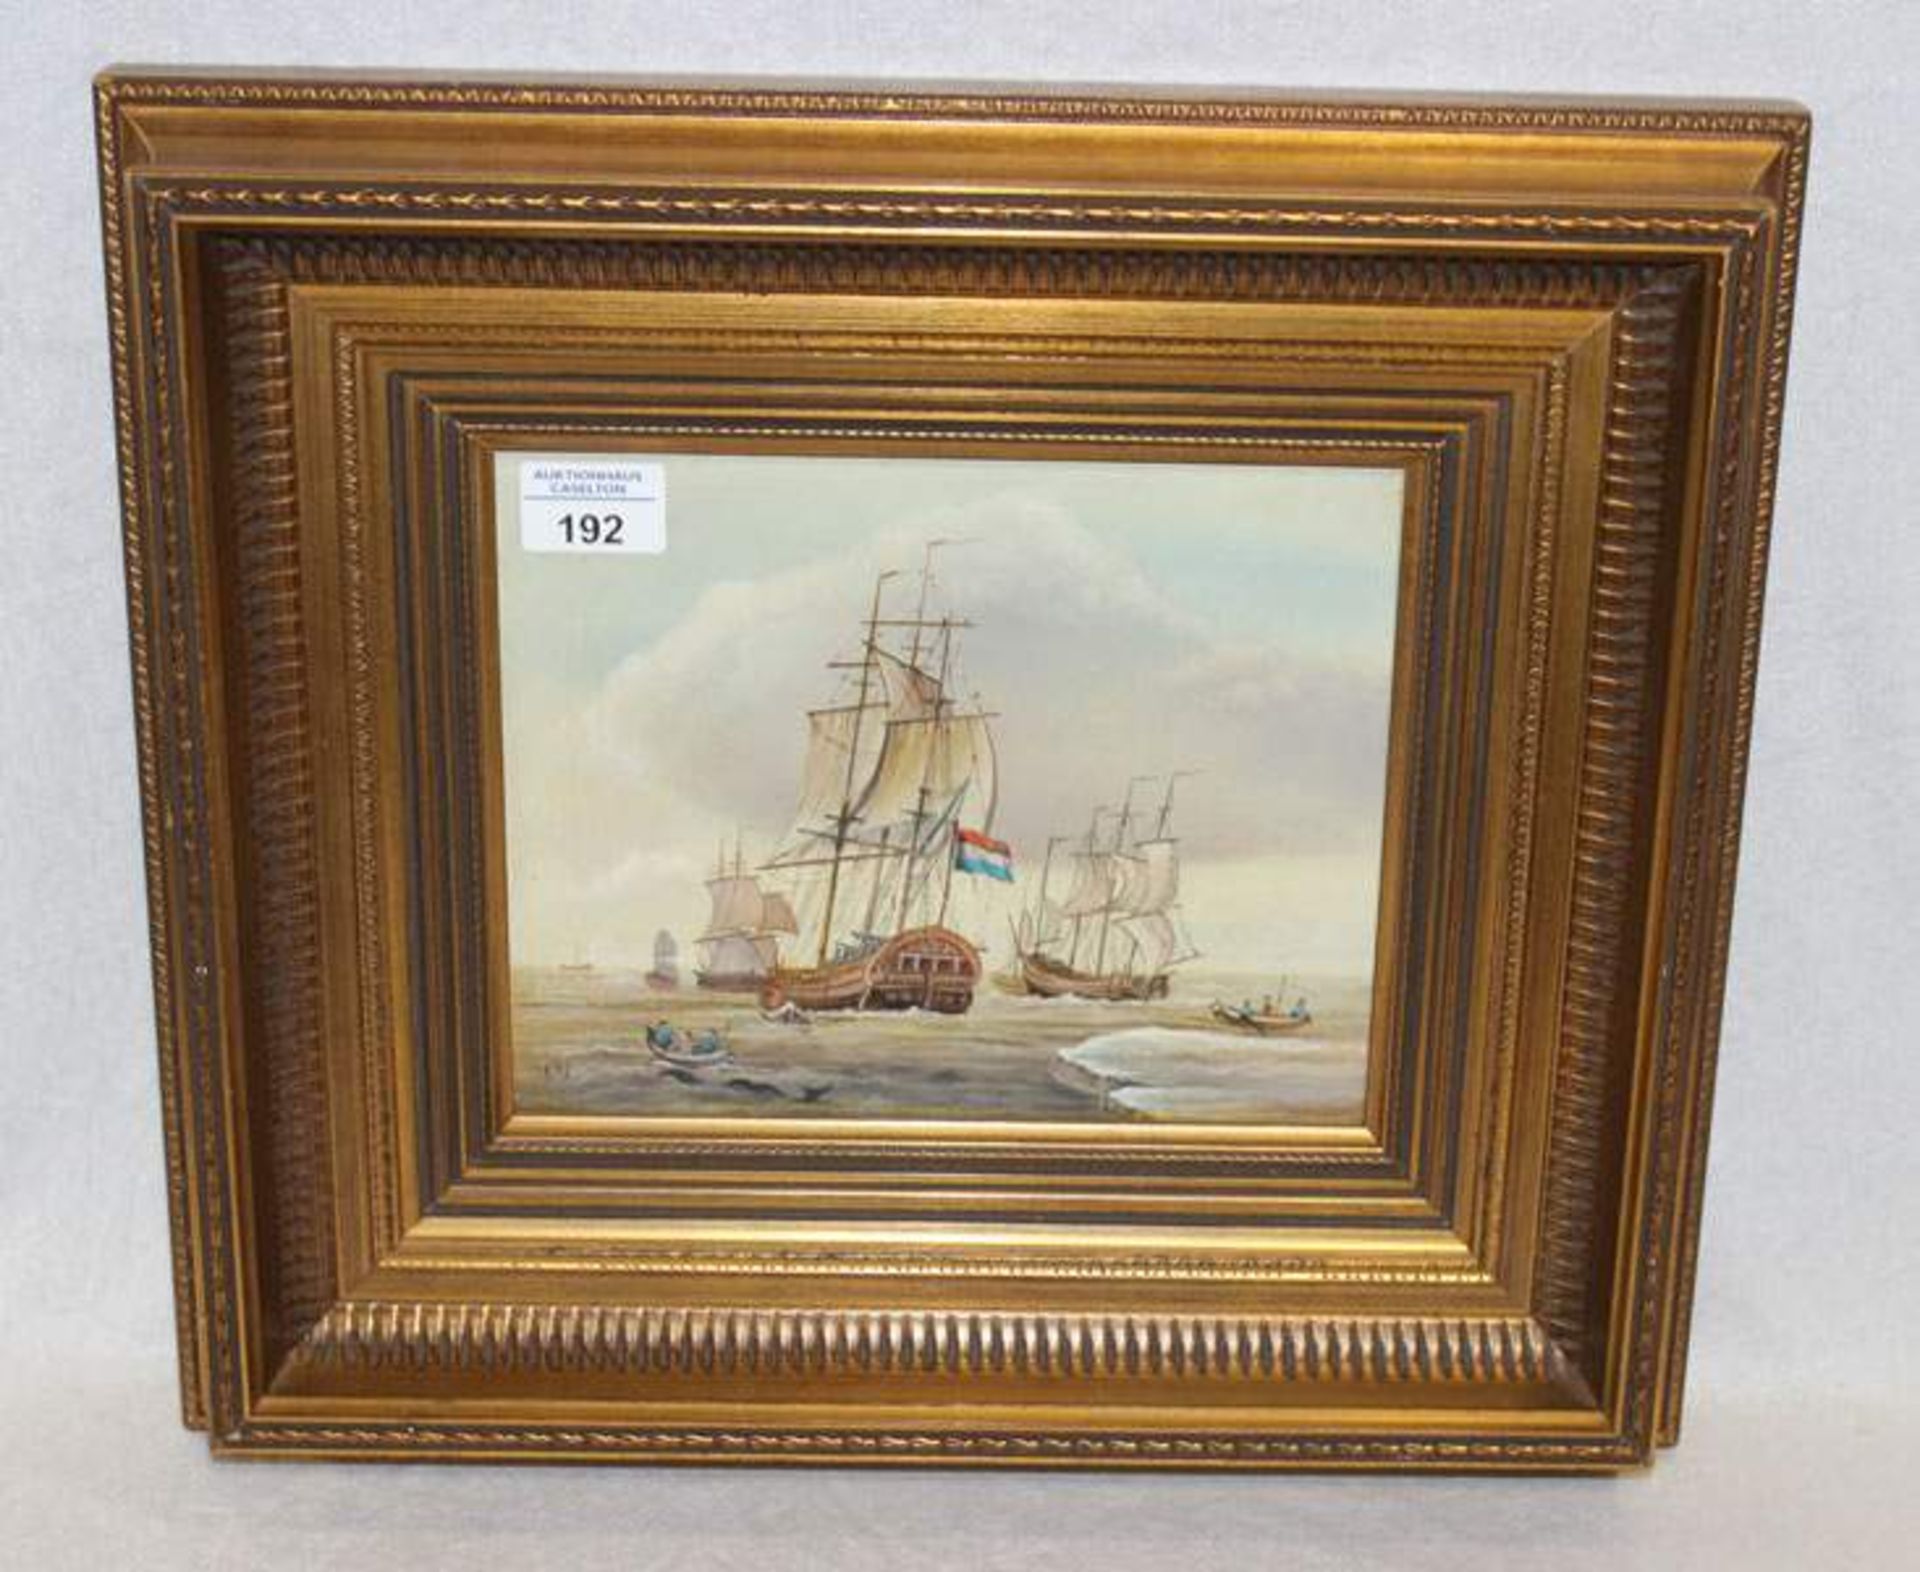 Gemälde ÖL/Holz 'Segelschiffe und Ruderboote', monogrammiert WV, gerahmt, incl. Rahmung 38 cm x 43